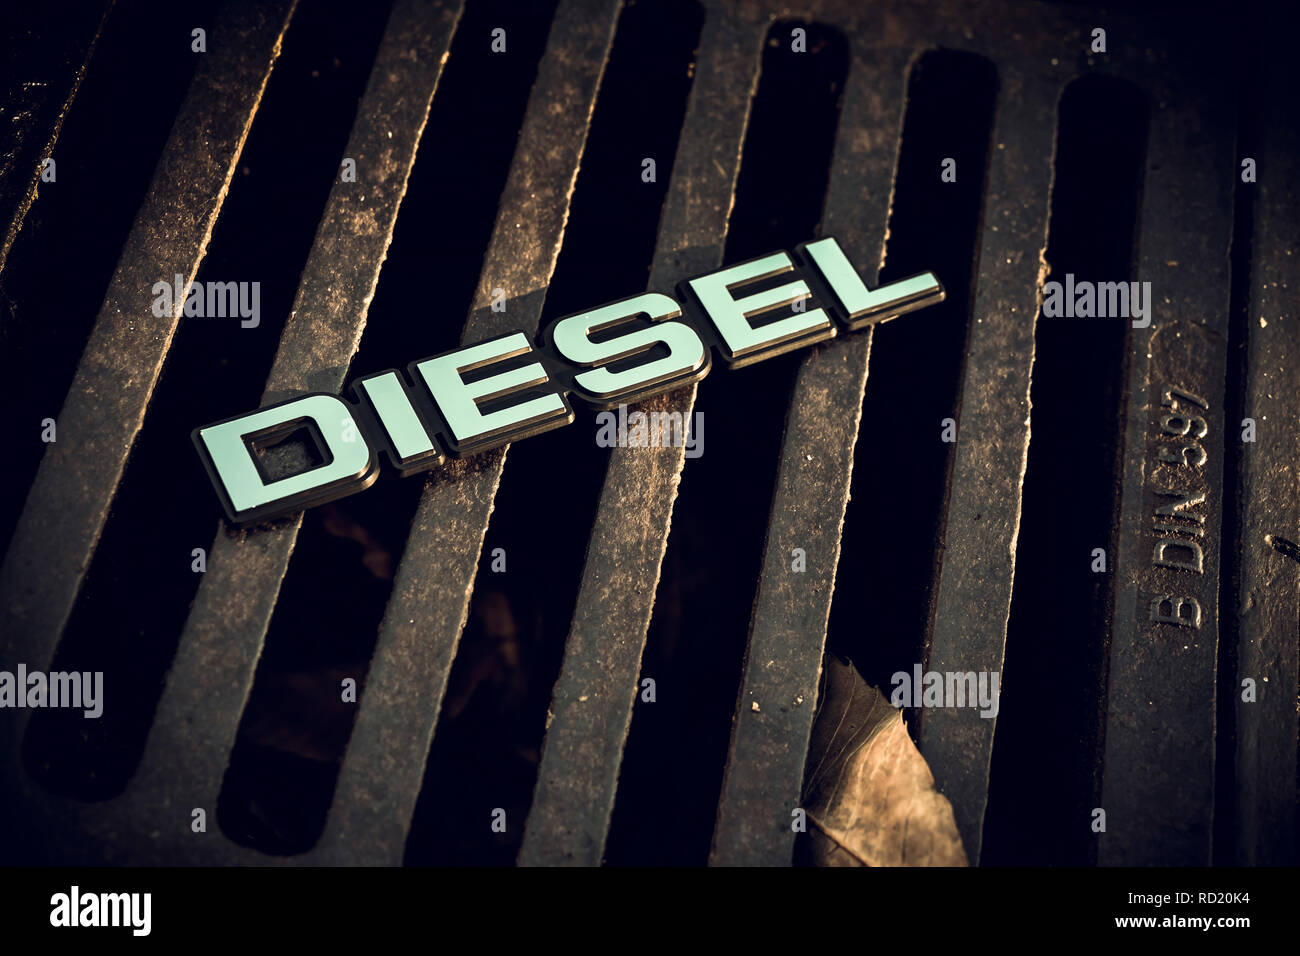 Diesel signs on a Gullideckel, end of the diesel car, Diesel-Zeichen auf einem Gullideckel, Ende des Diesel-Autos Stock Photo